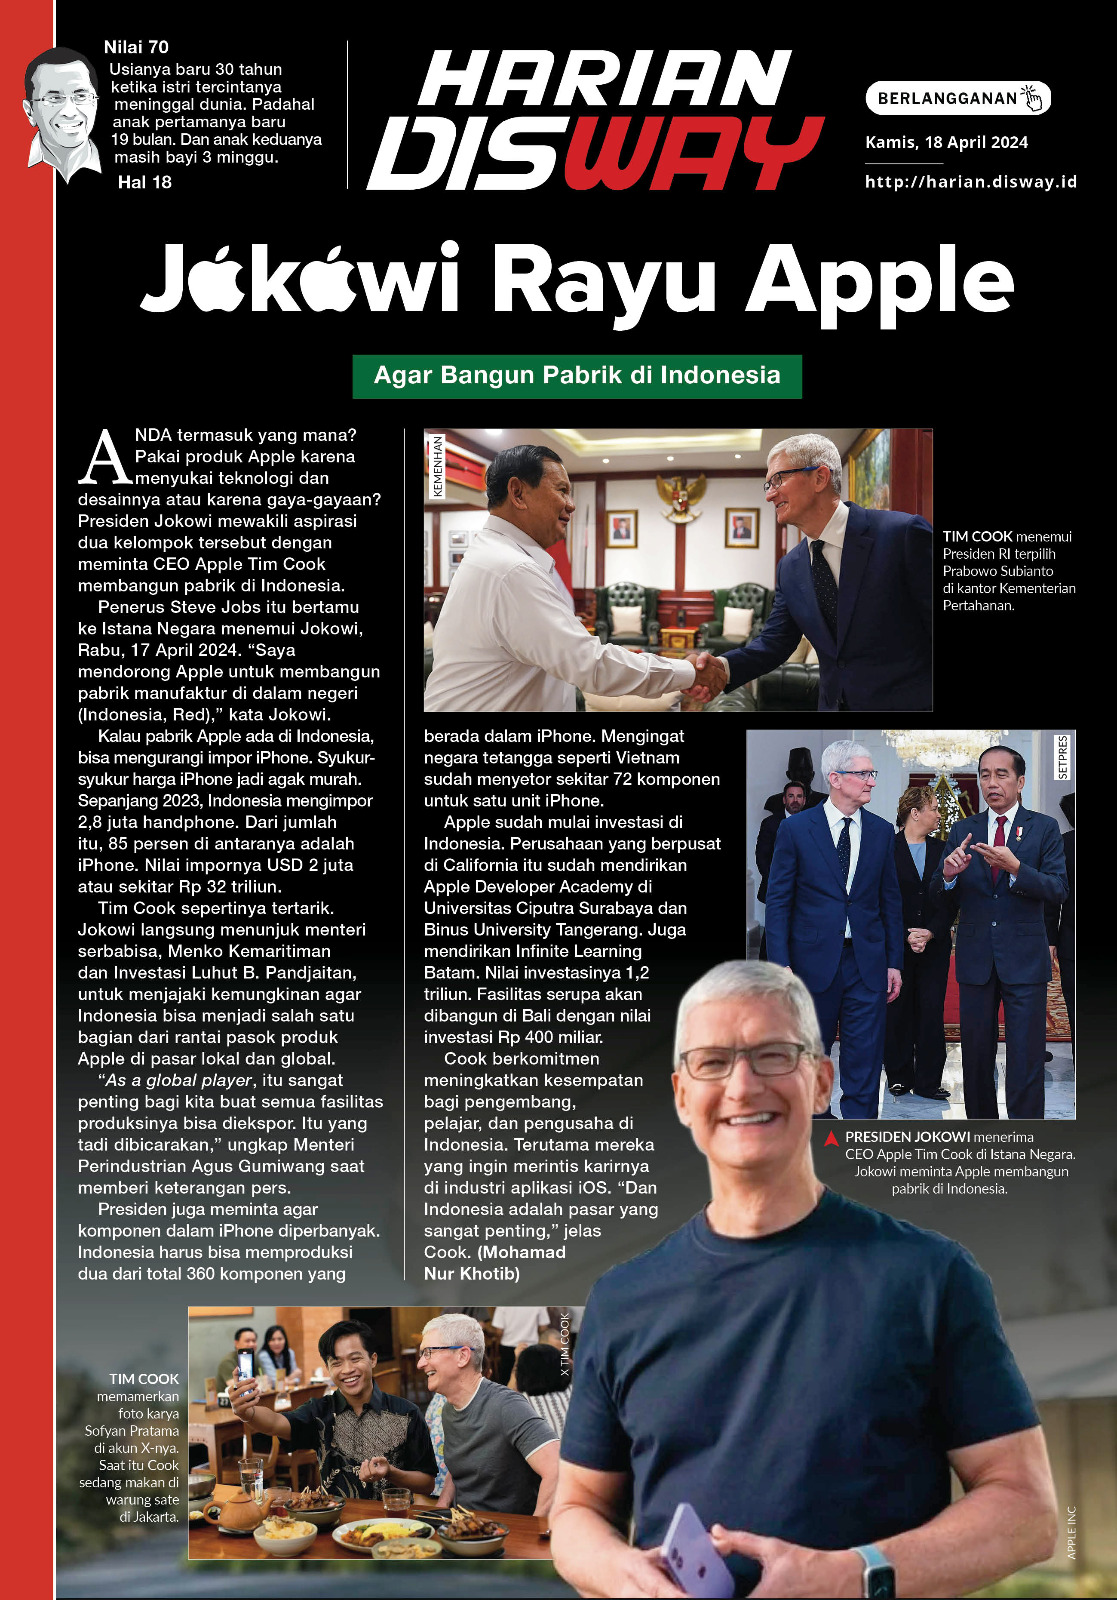 Jokowi Rayu Apple